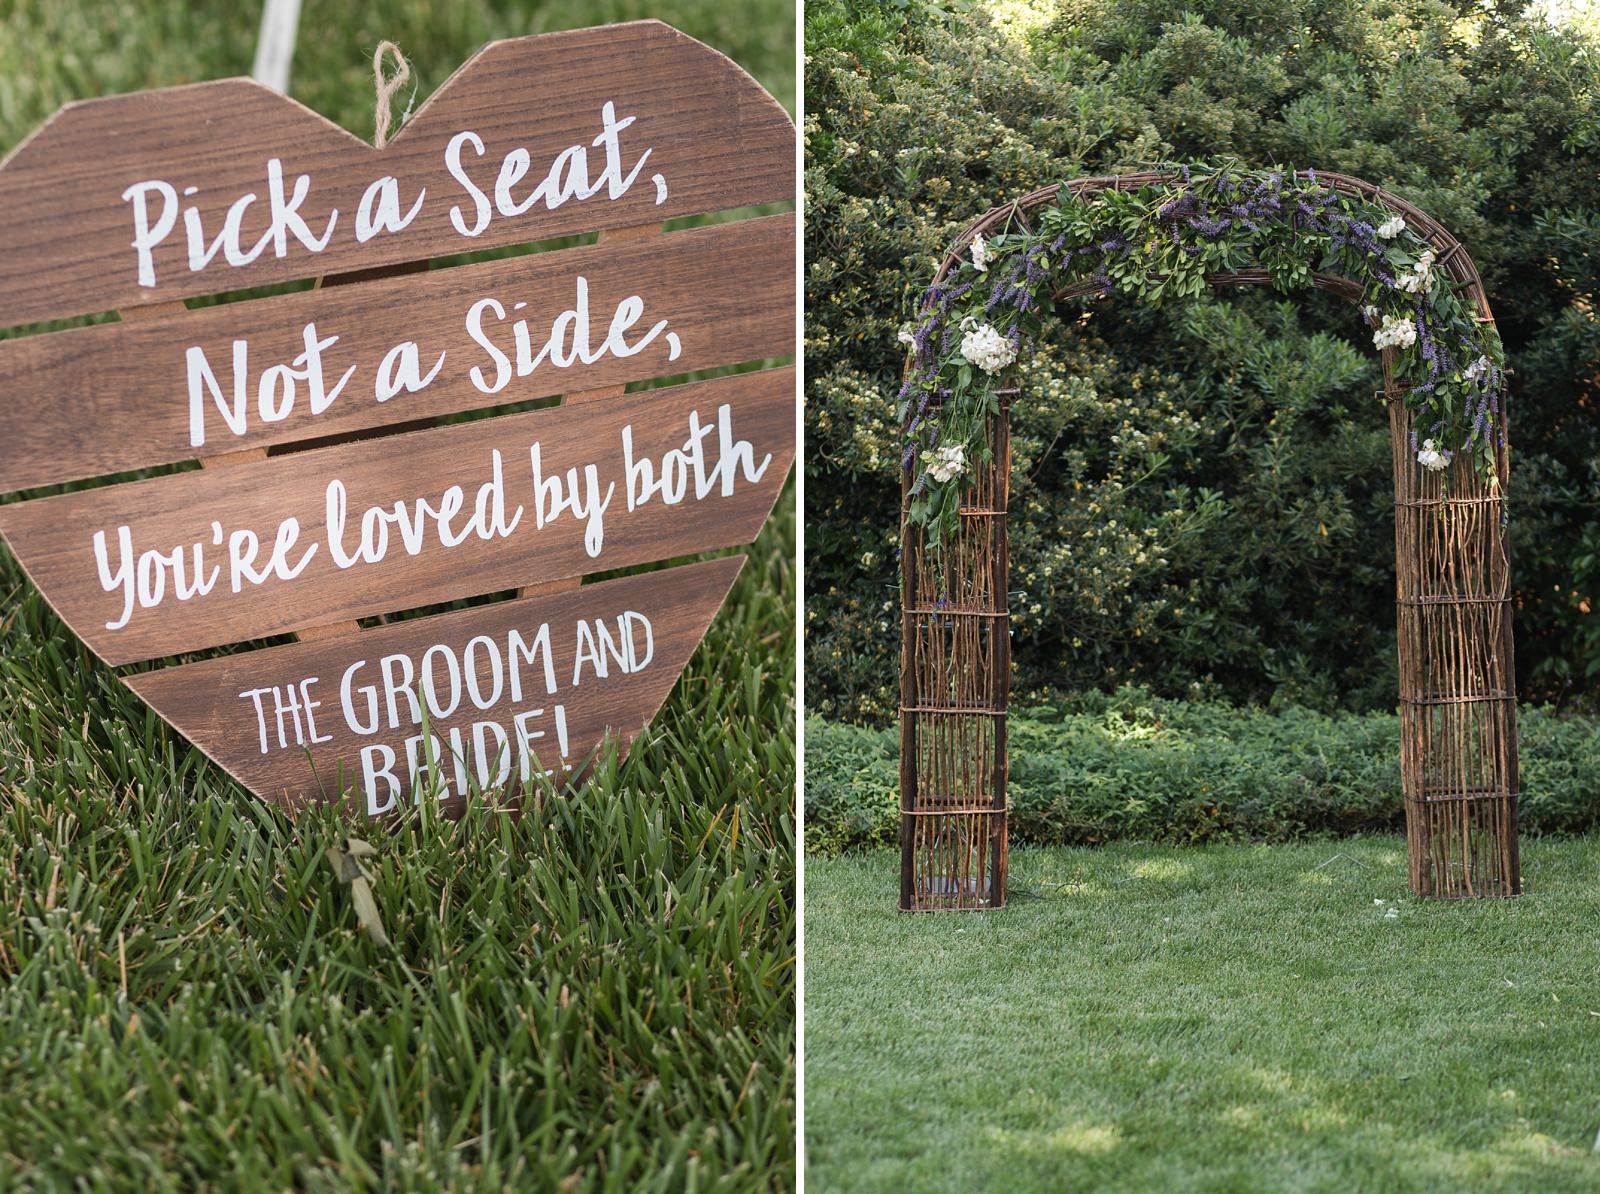 Intimate Davis Garden Wedding by Oh Snap! Photography Sacramento